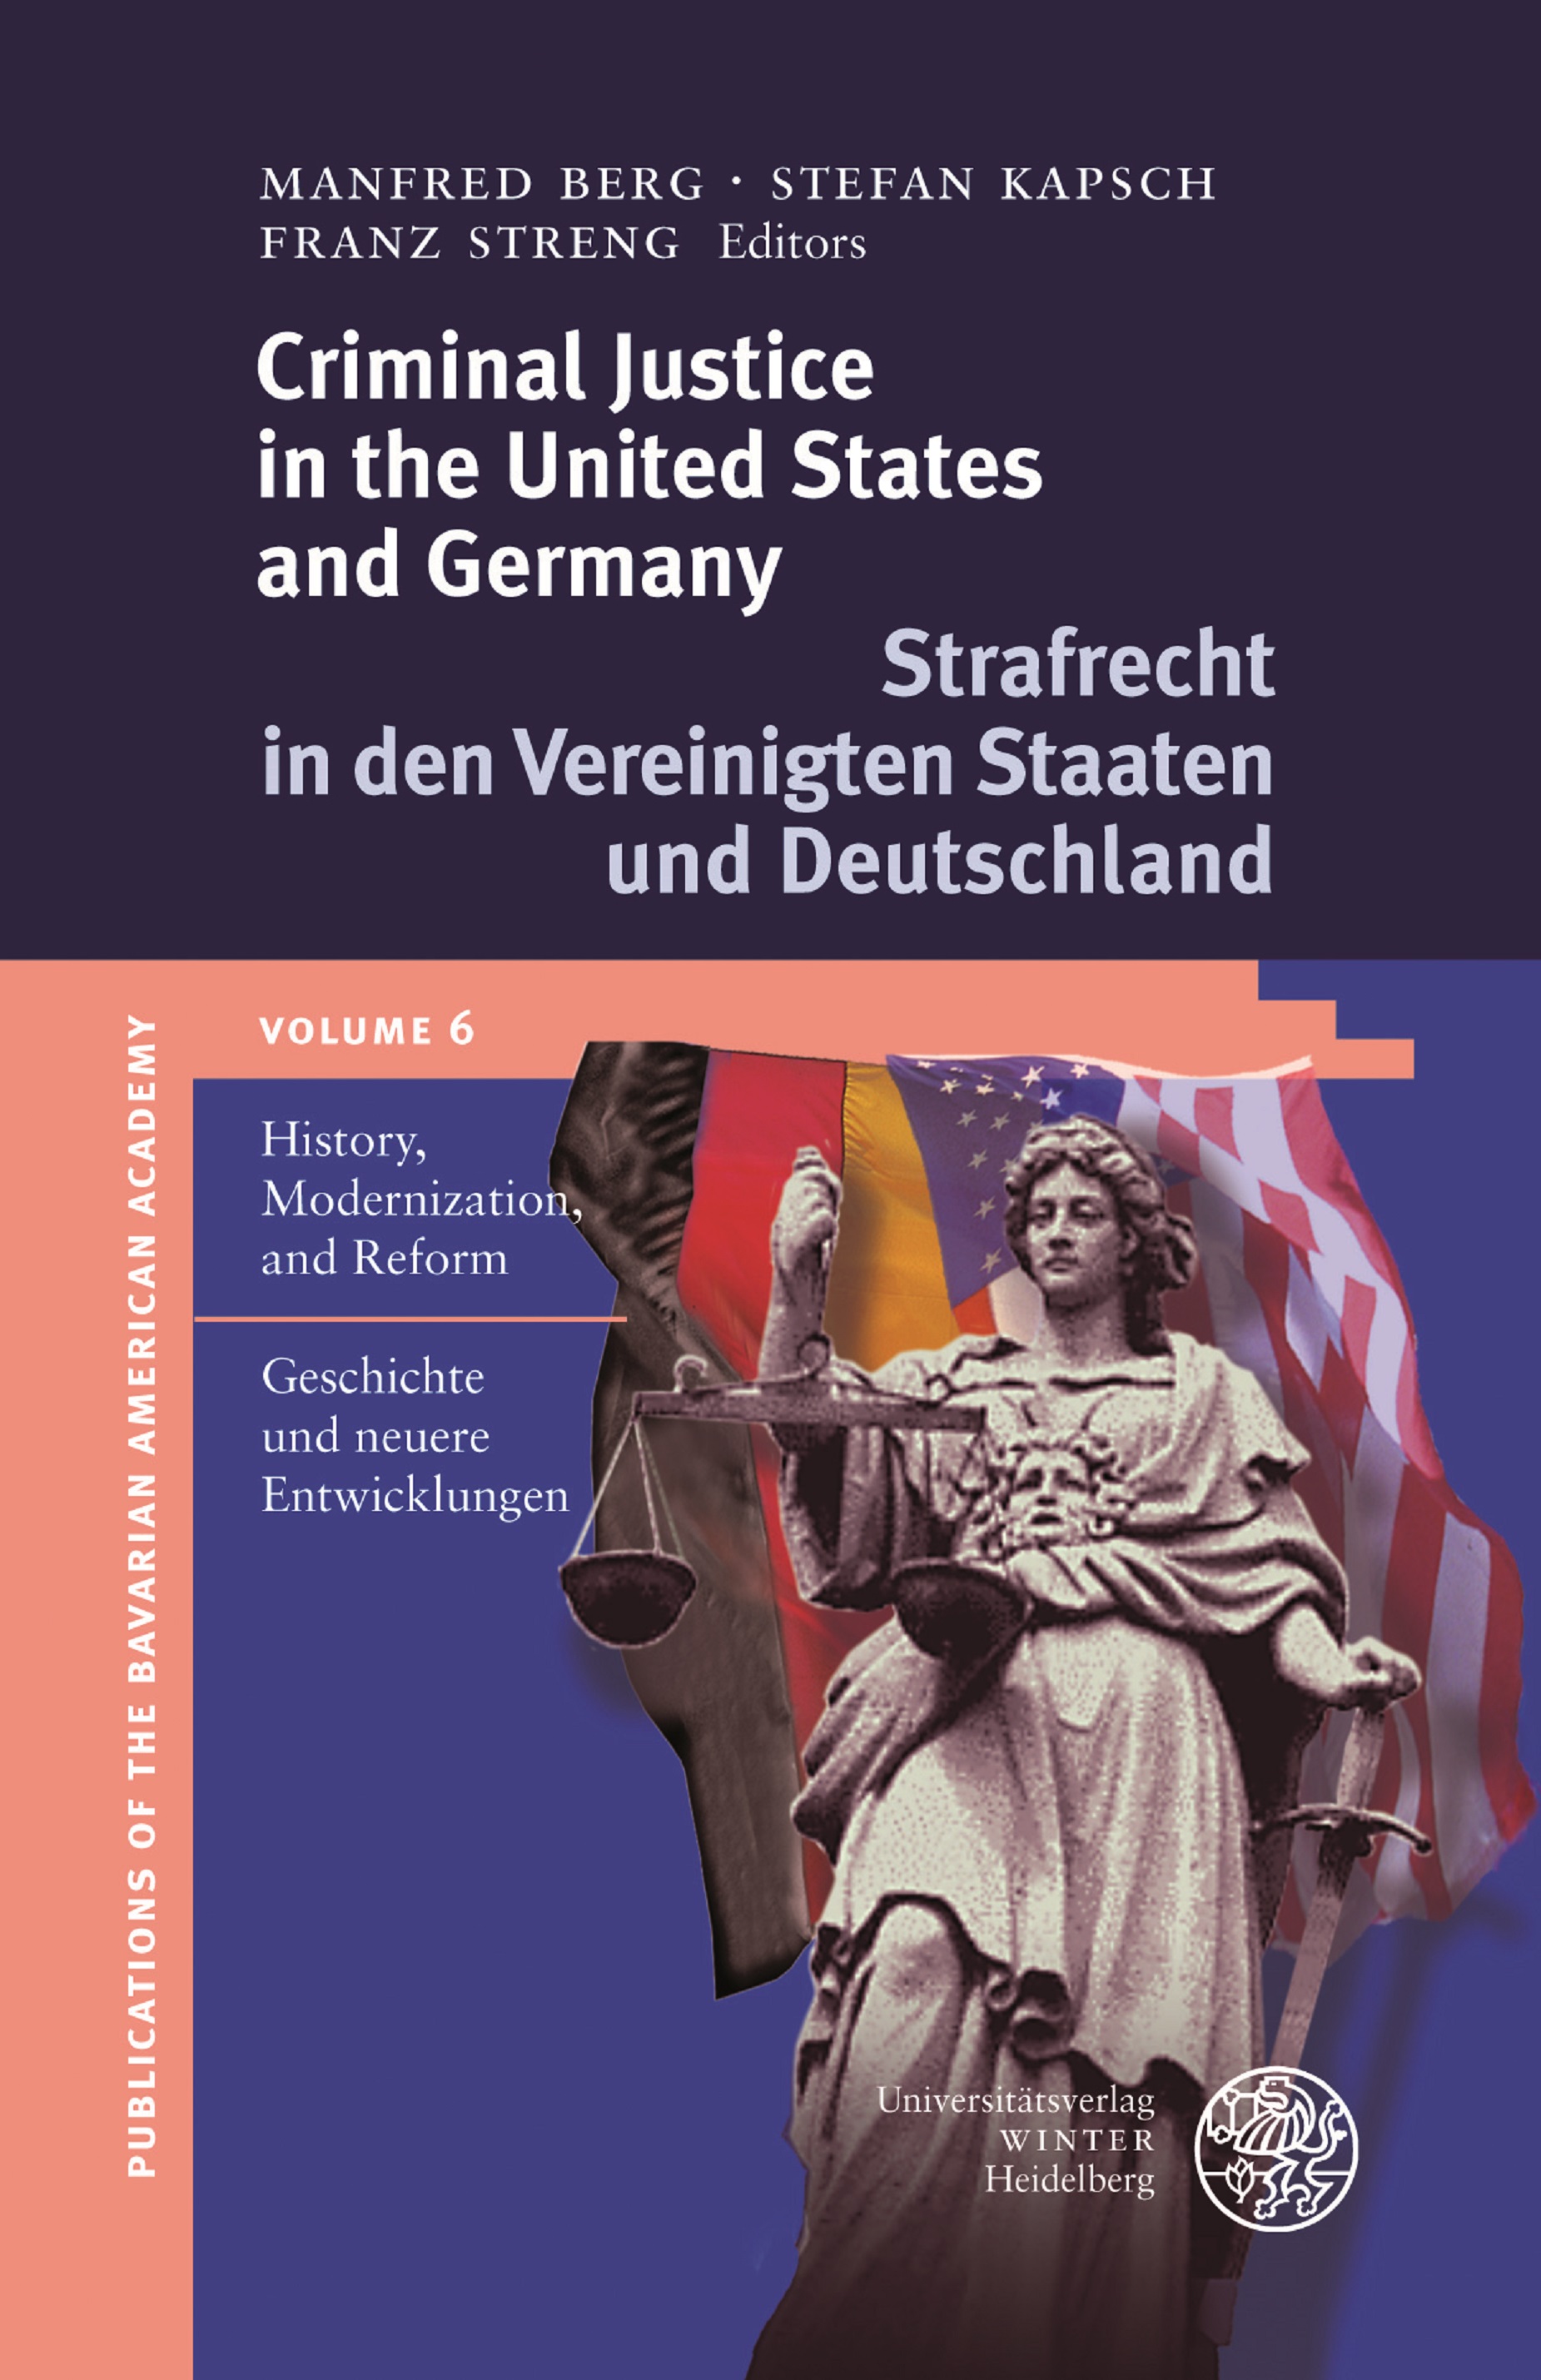 BAA publication Vol. 6 Criminal Justice in the United States and Germany. Strafrecht in den Vereinigten Staaten und Deutschland